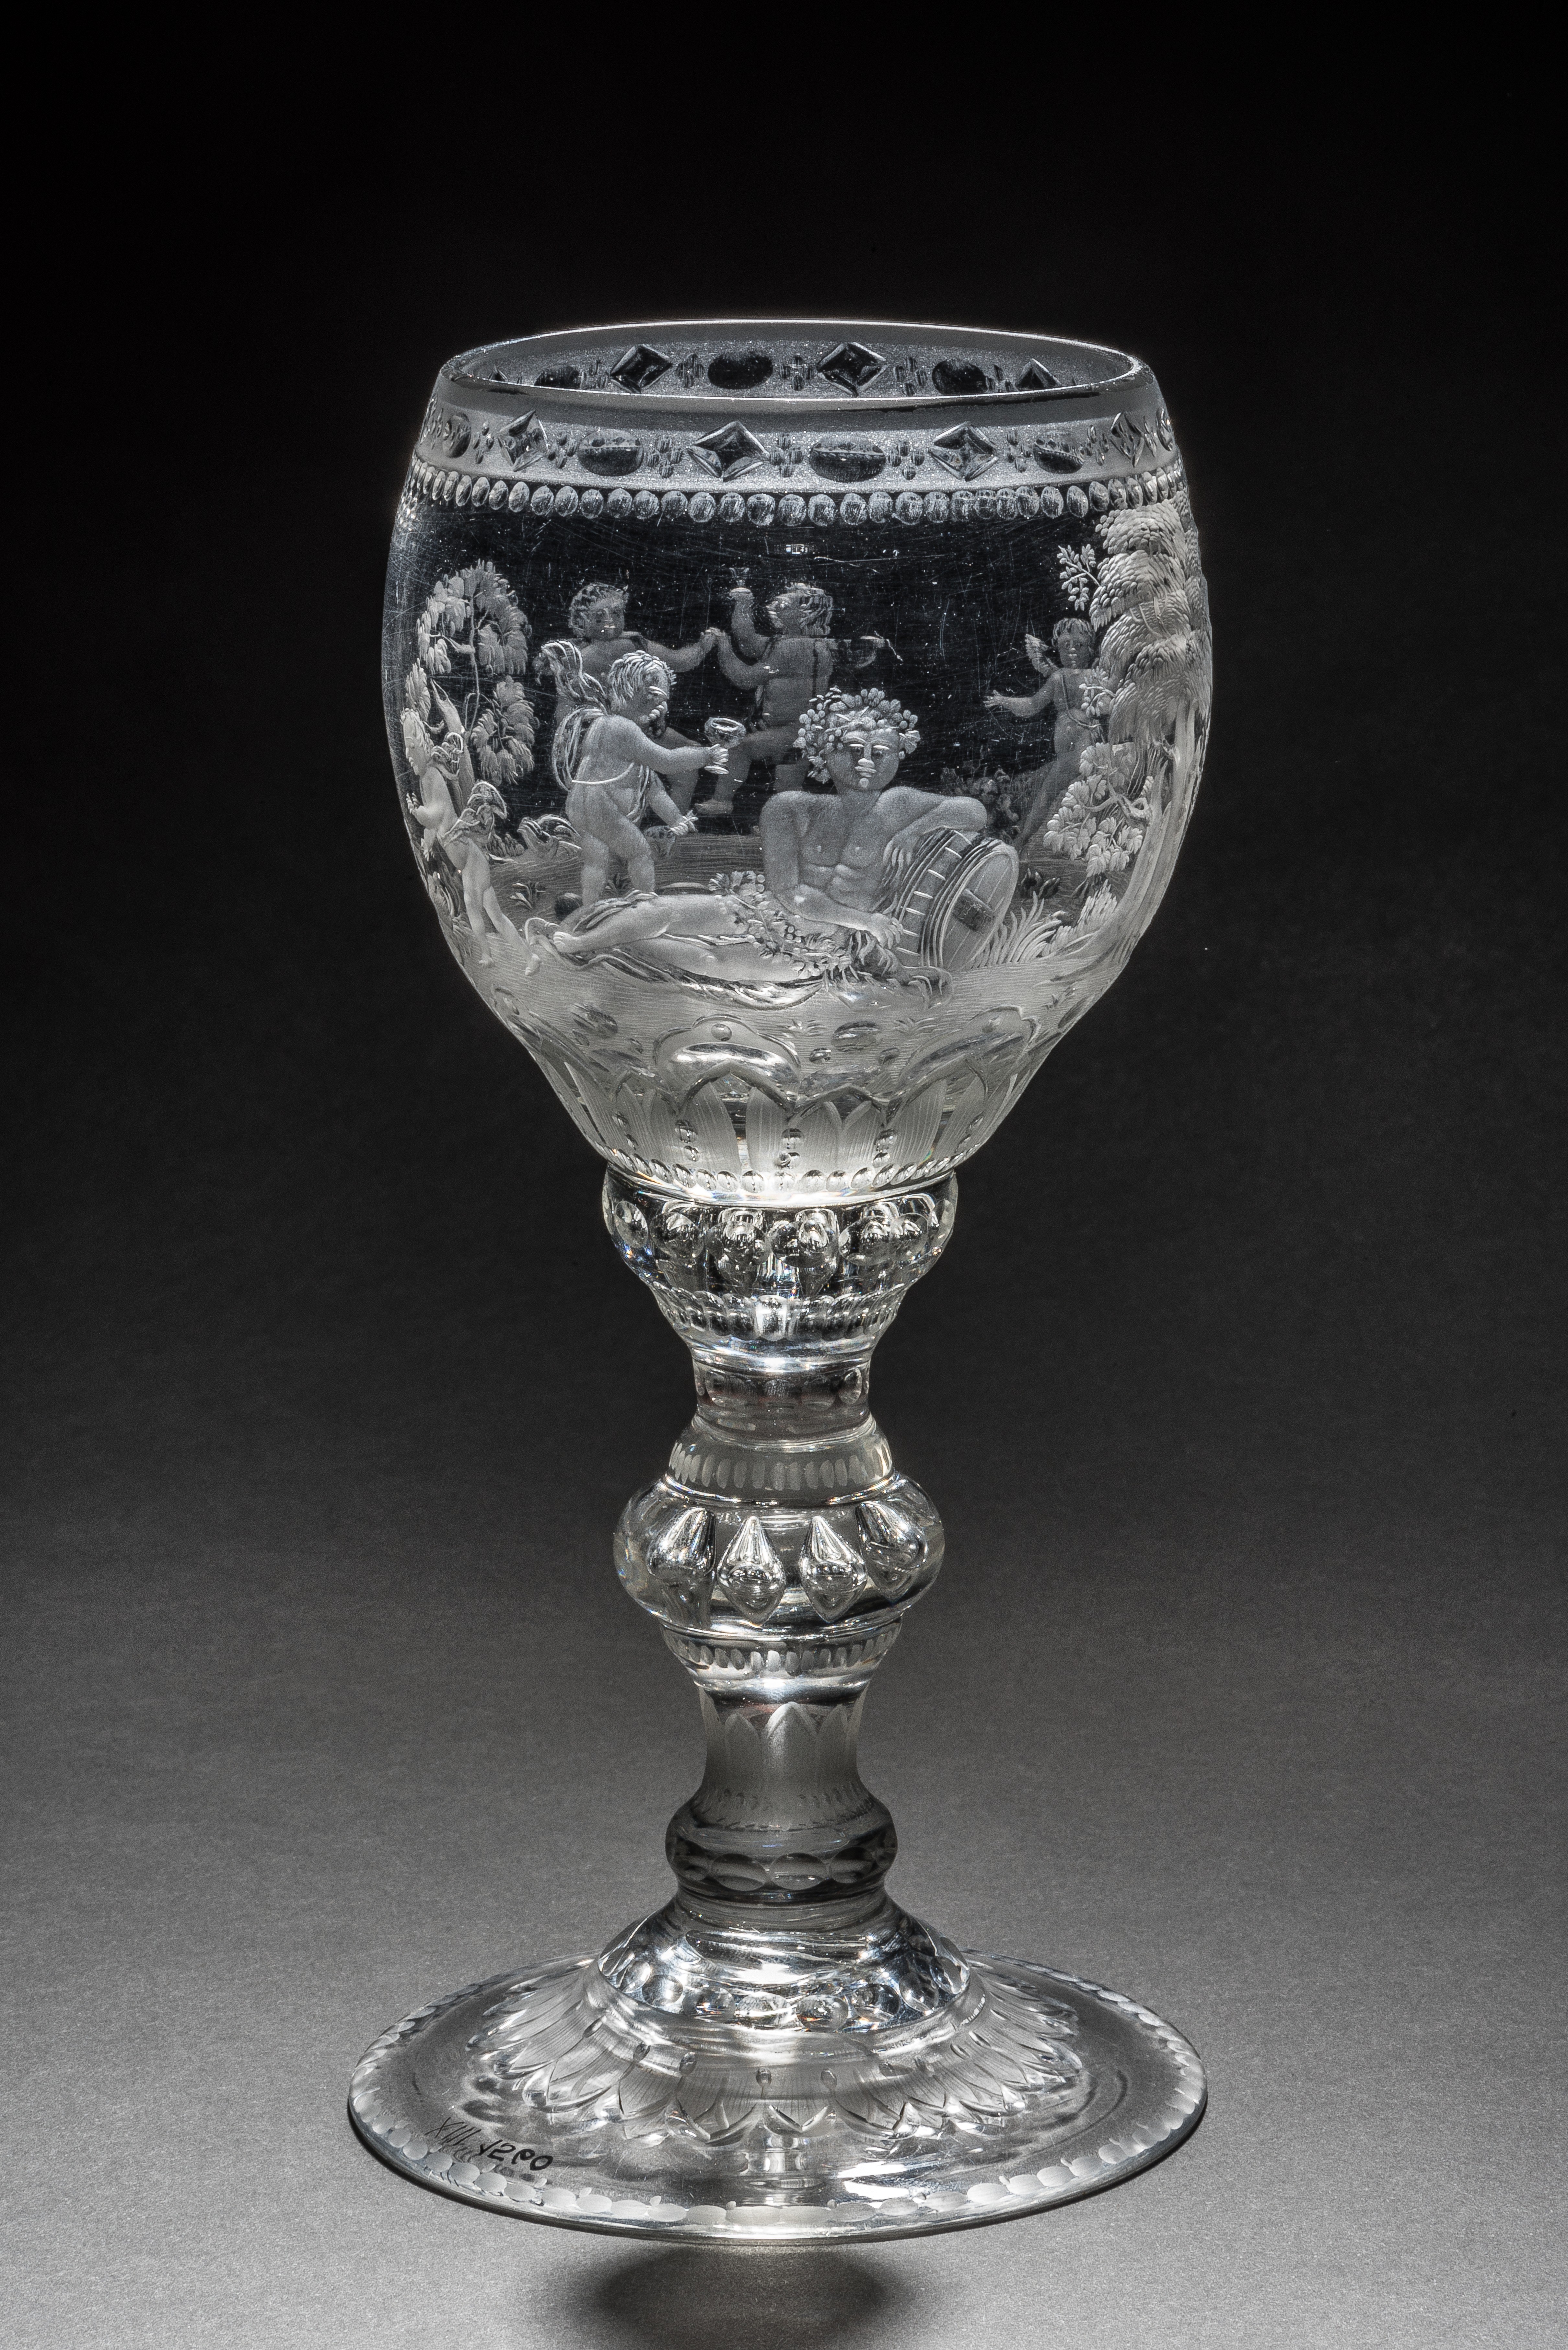 Bauchiger Pokal mit Diana und Bacchus, XIII 1560. (Stiftung Preußische Schlösser und Gärten Berlin-Brandenburg CC BY-NC-SA)